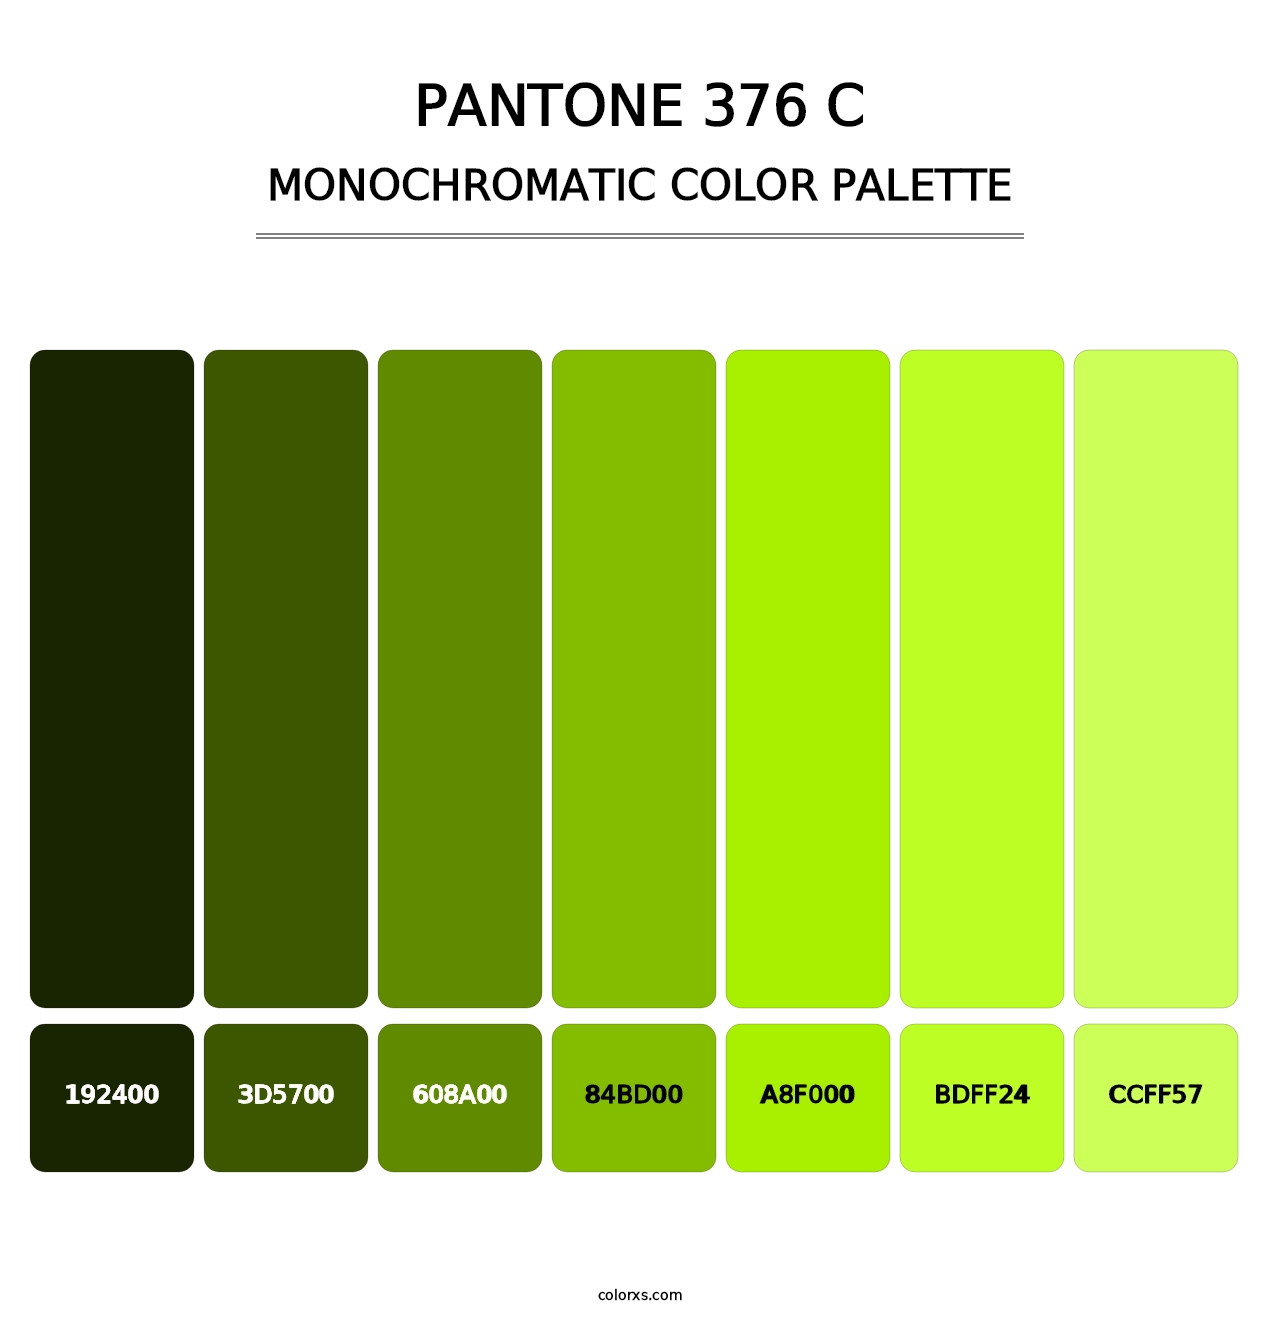 PANTONE 376 C - Monochromatic Color Palette